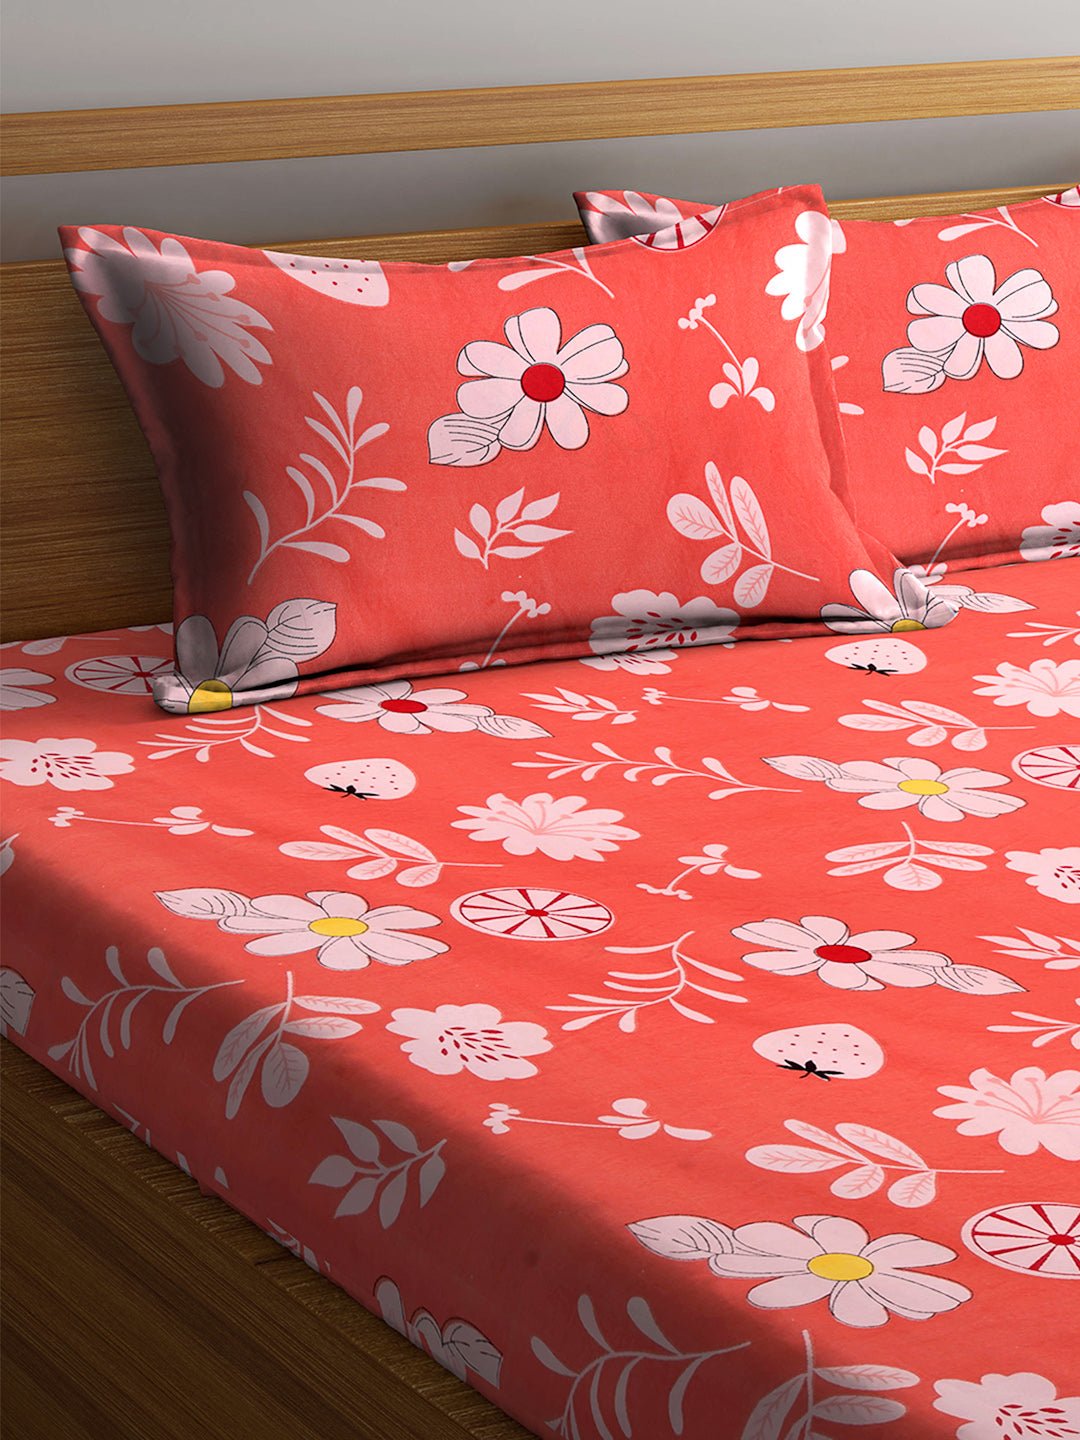 Arrabi Orange Floral TC Cotton Blend Double Size Bedsheet with 2 Pillow Cover